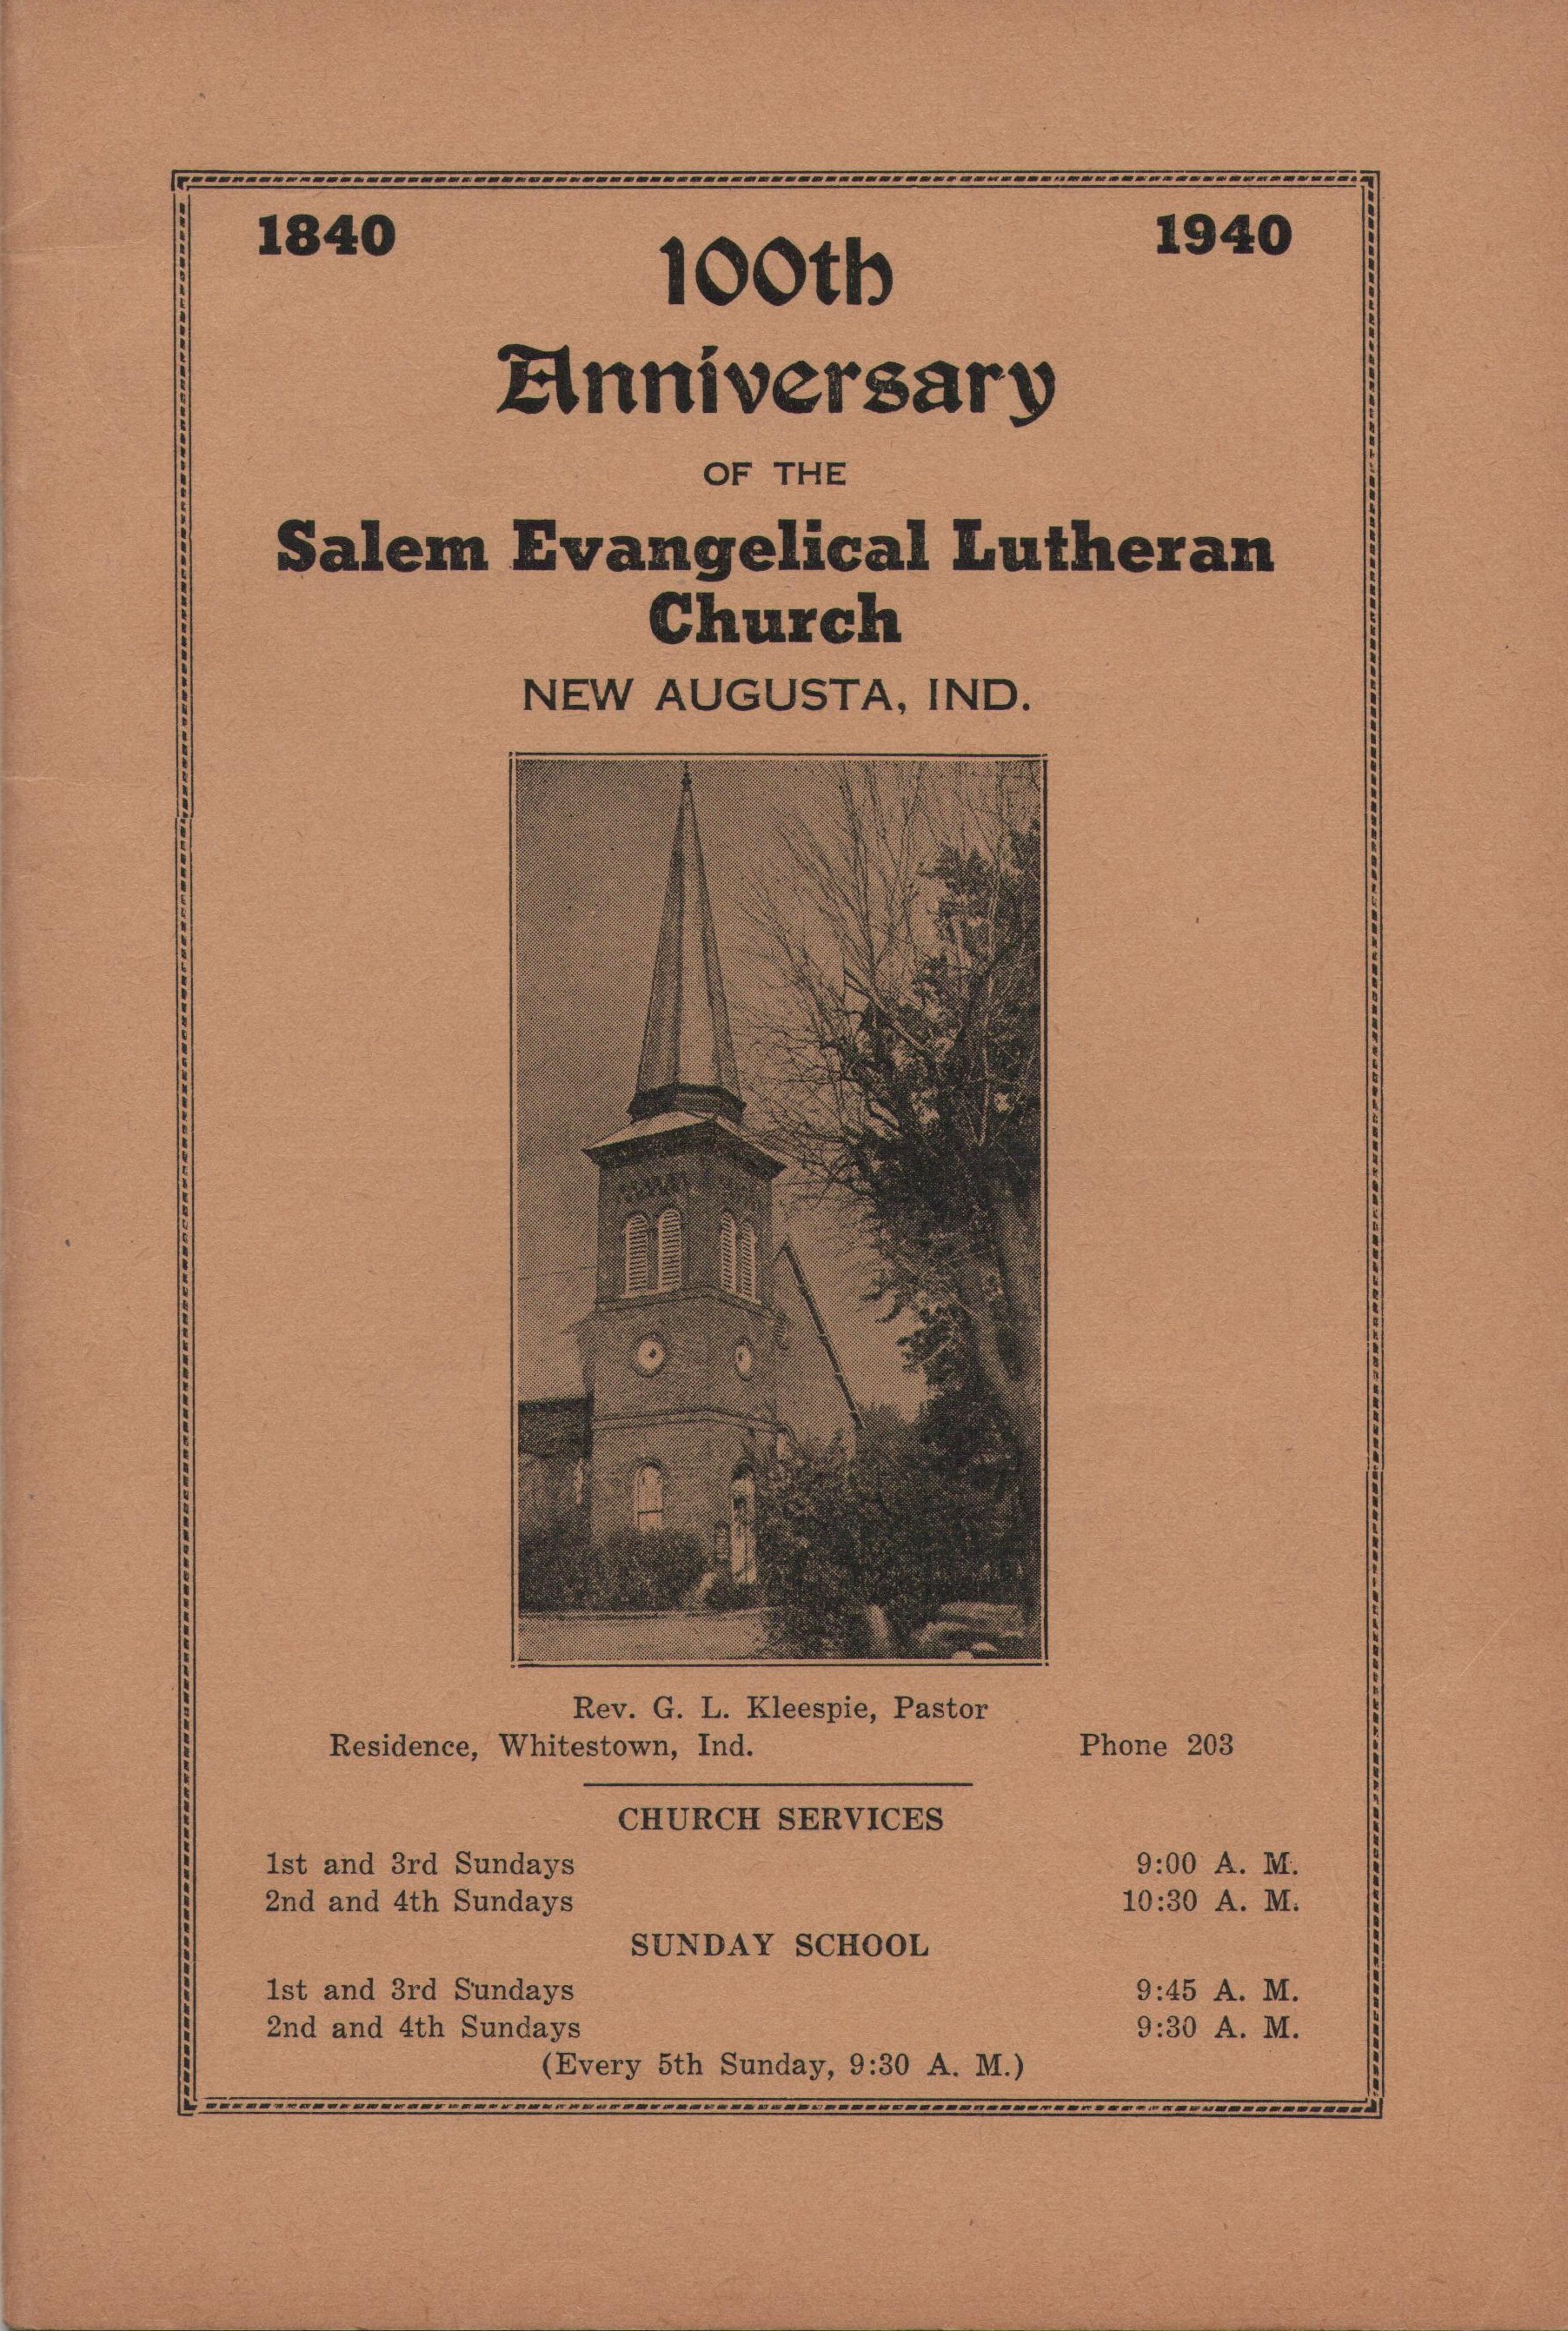 1940 Centennial Book